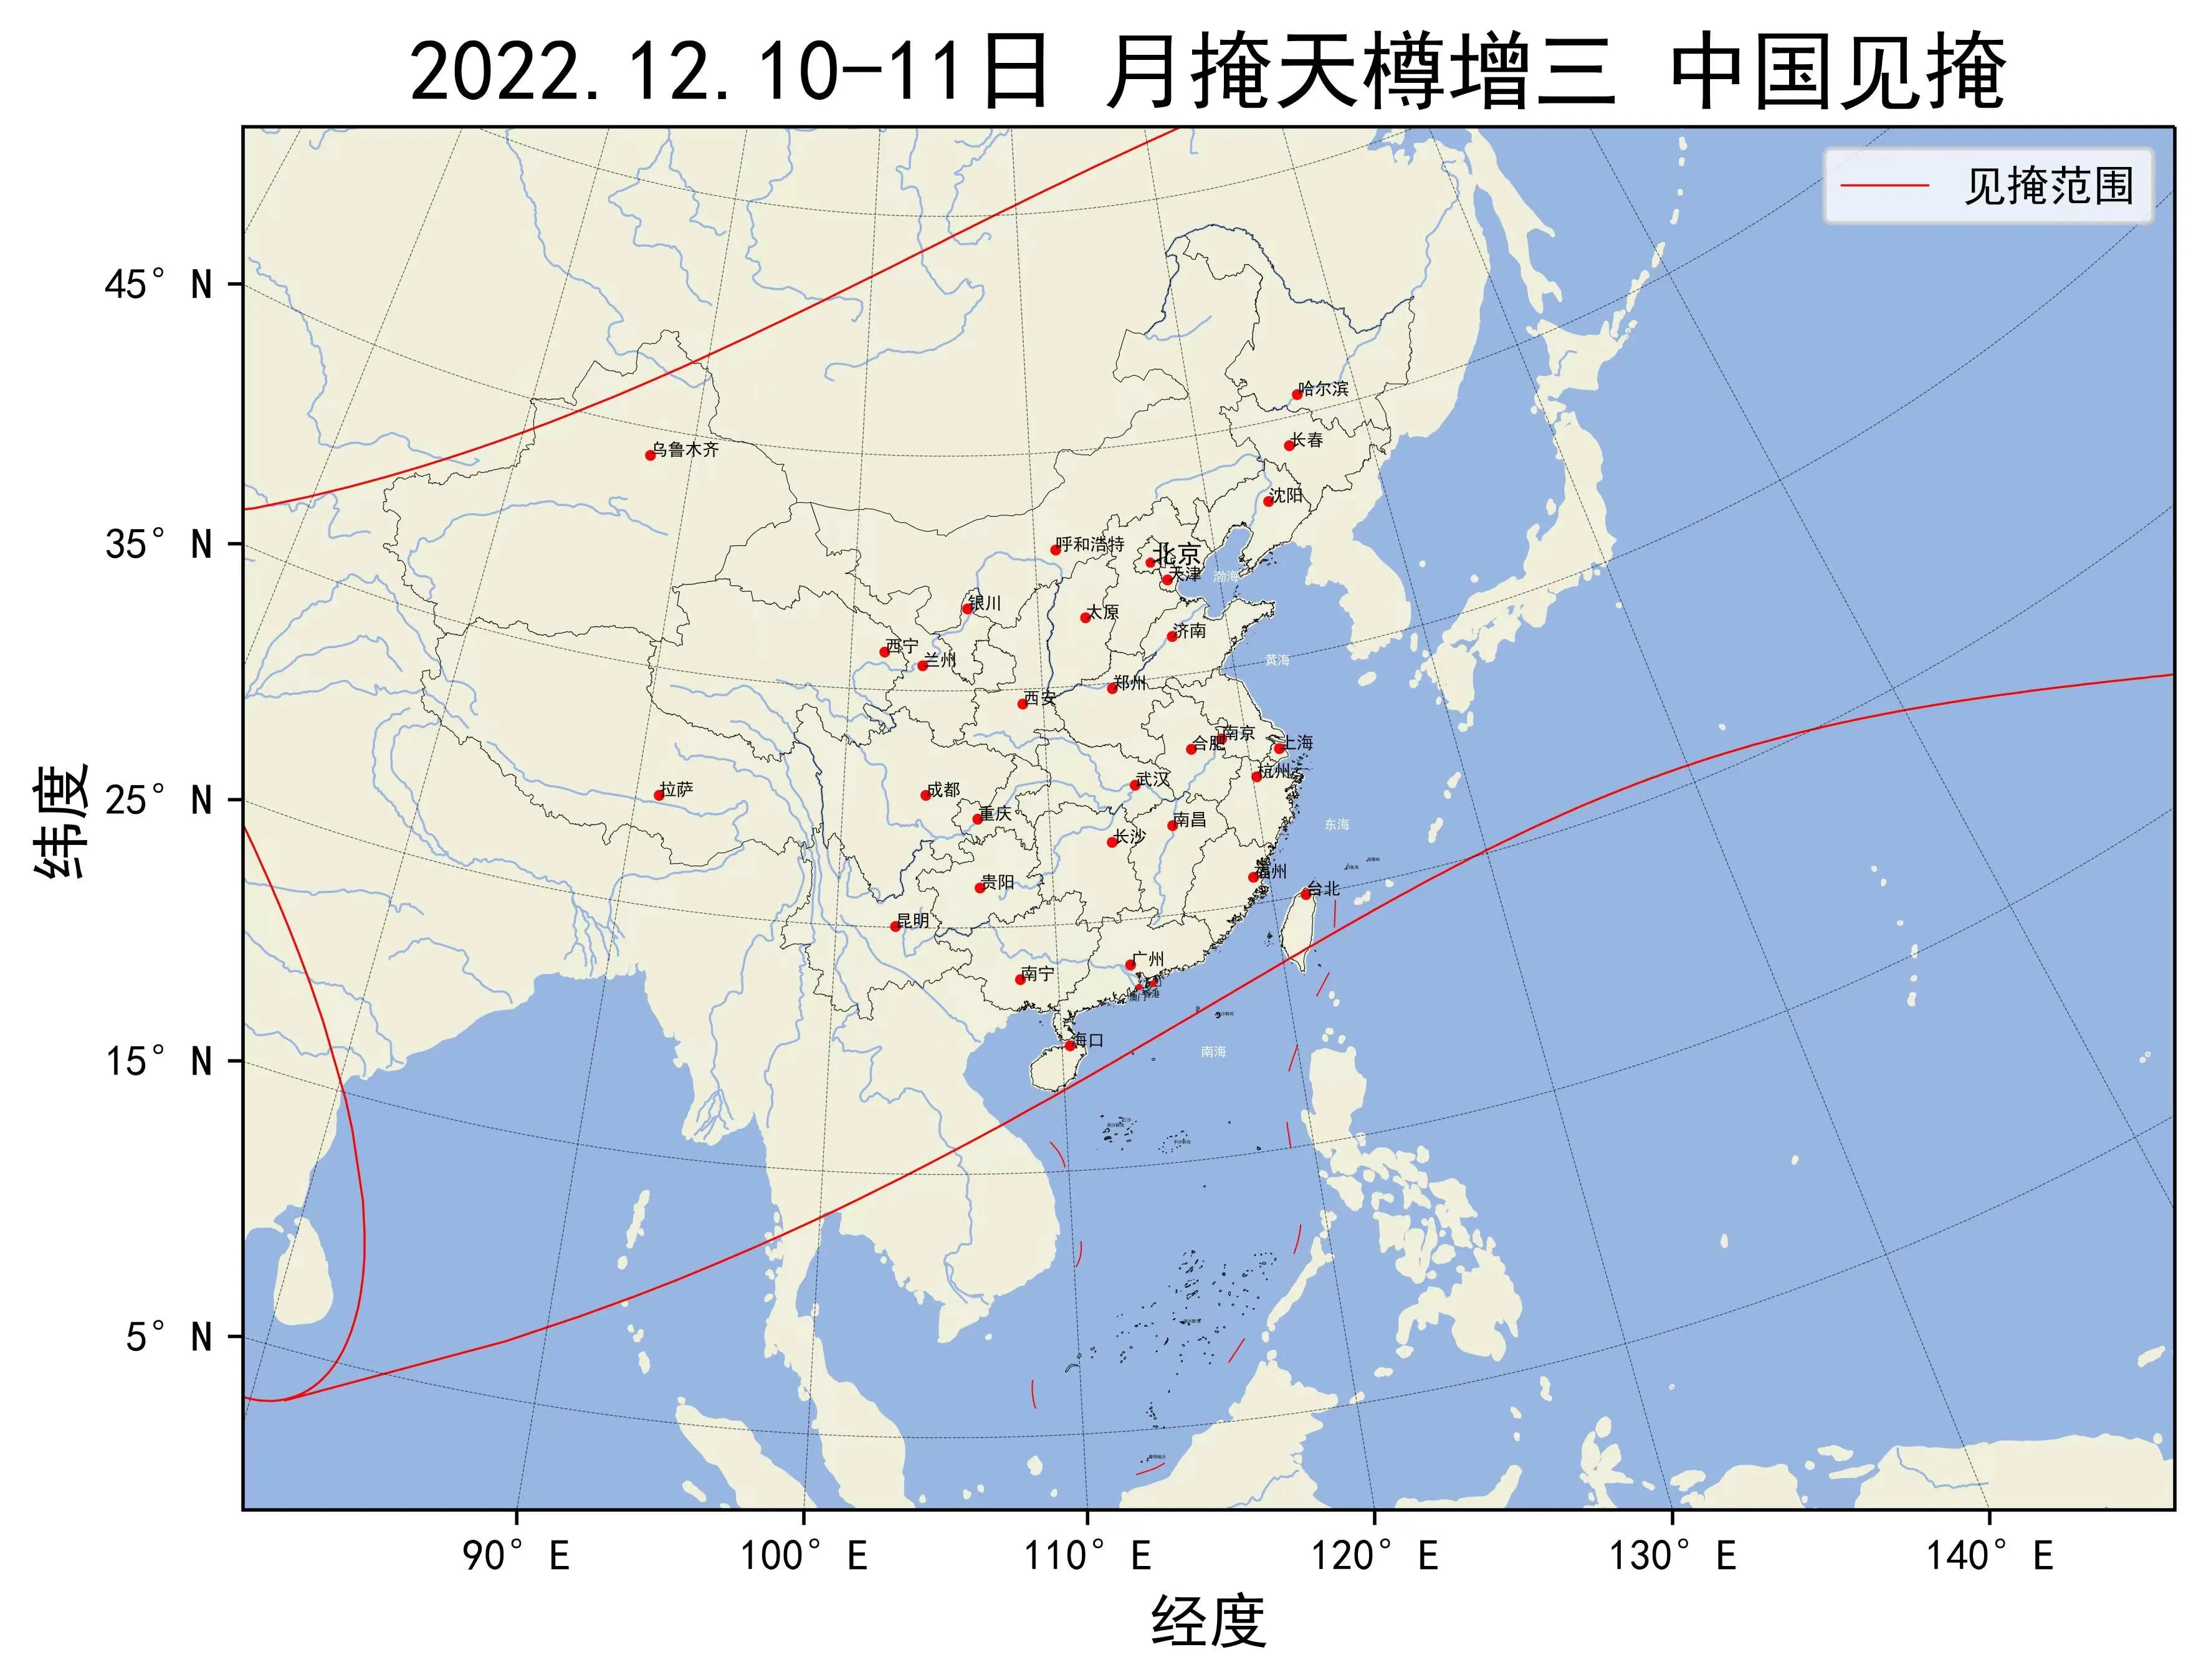 2022年12月10-11日月掩天樽增三中国见掩